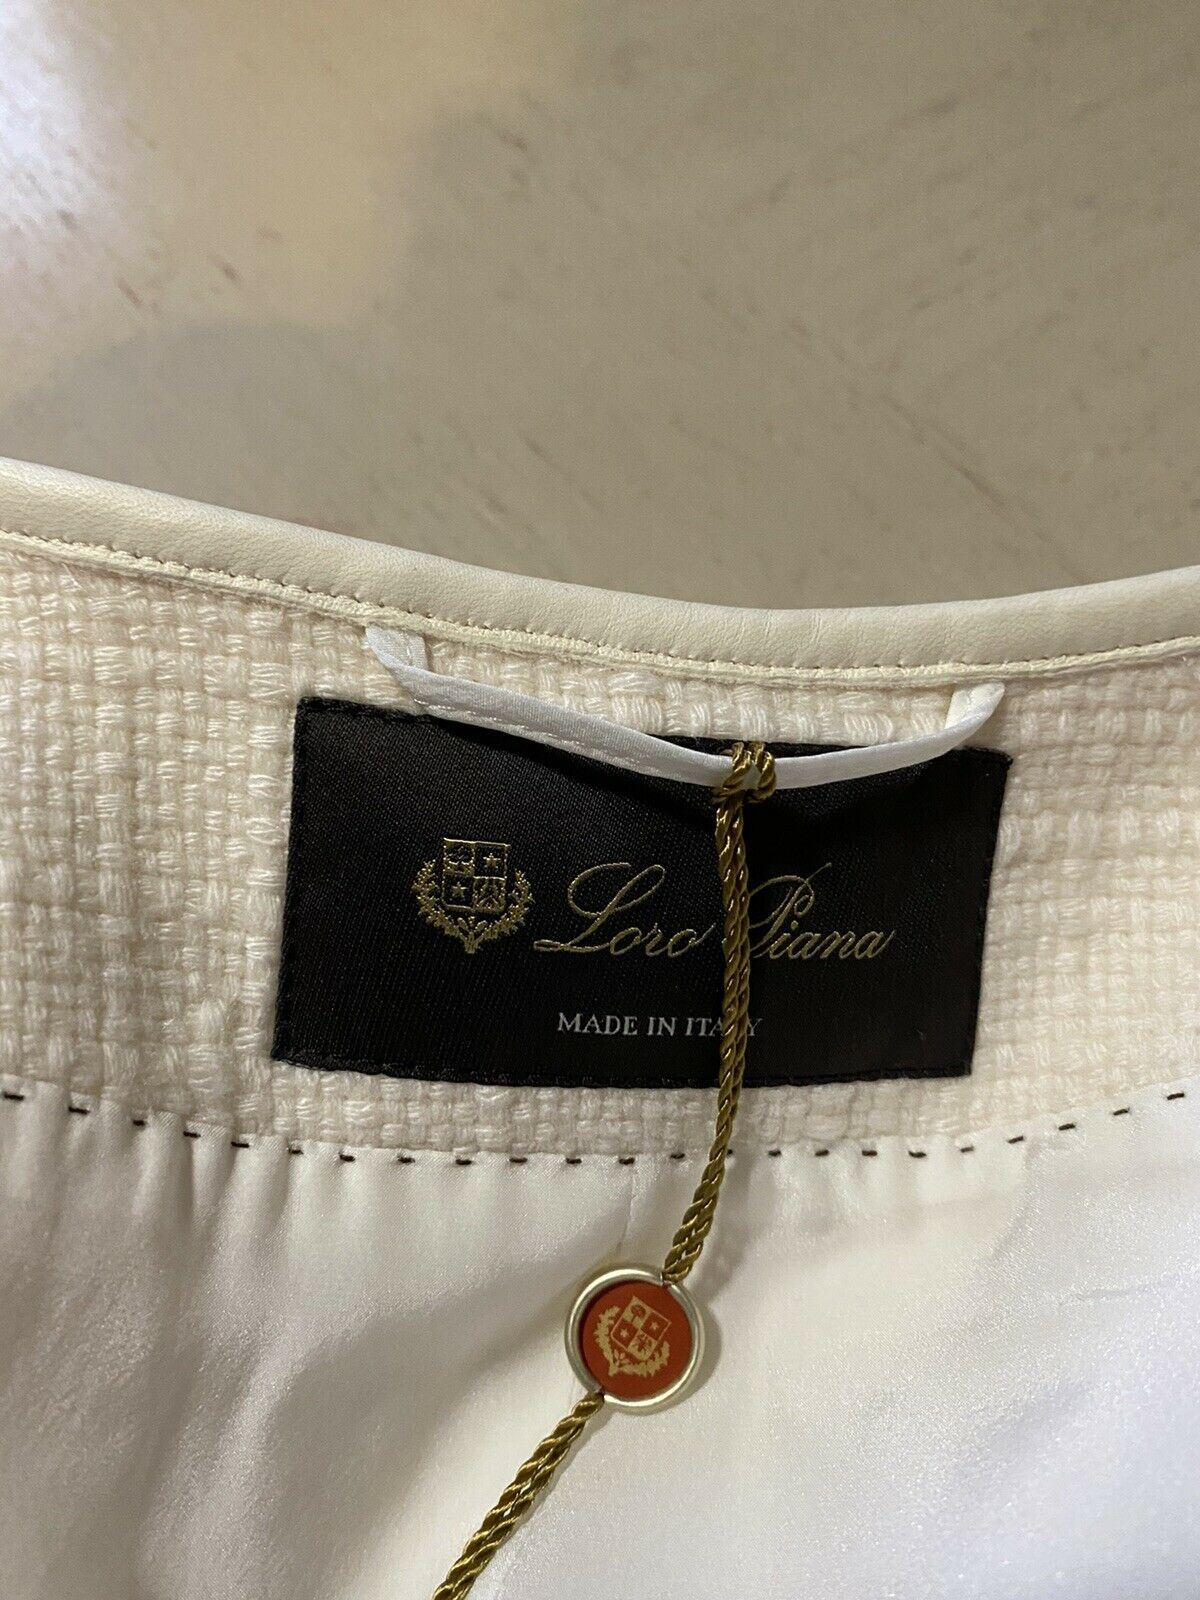 New $5395 Loro Piana Women  Cashmere/Leather Long Jacket Coat White 44/10 Italy